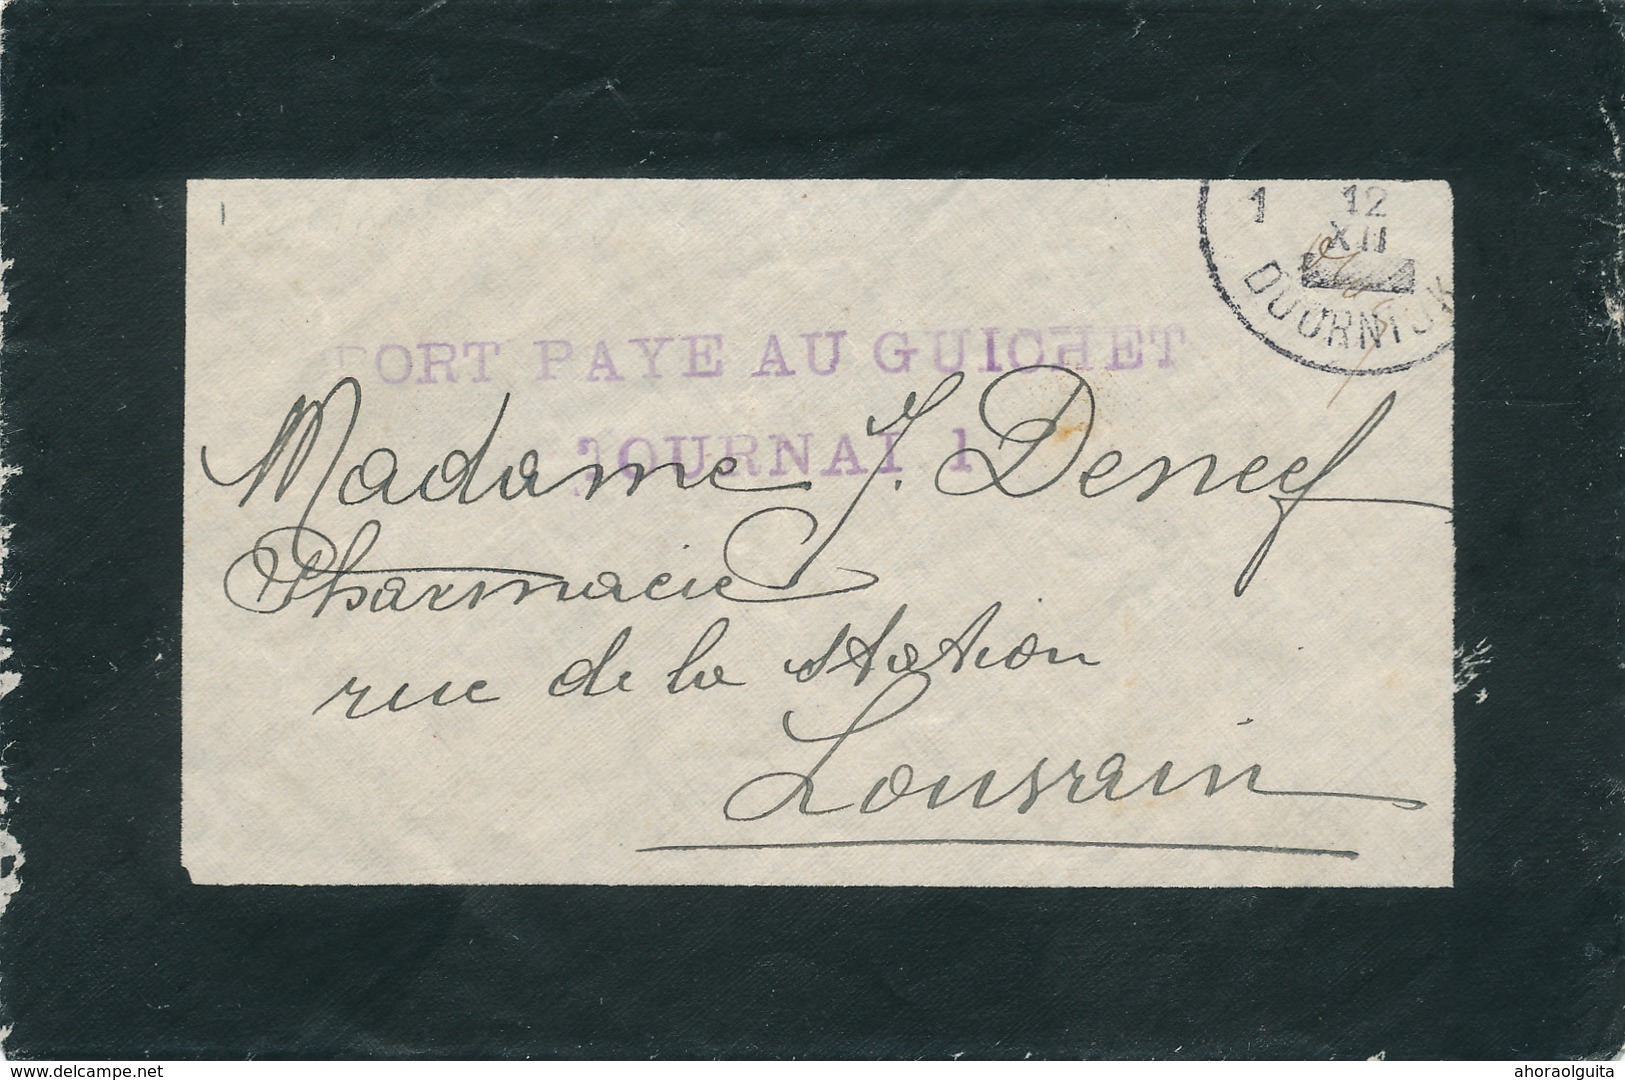 104/29 - Enveloppe De Deuil Cachets De FORTUNE TOURNAI 12 XII (1918) Et Port Payé Au Guichet TOURNAU 1 - Fortune Cancels (1919)